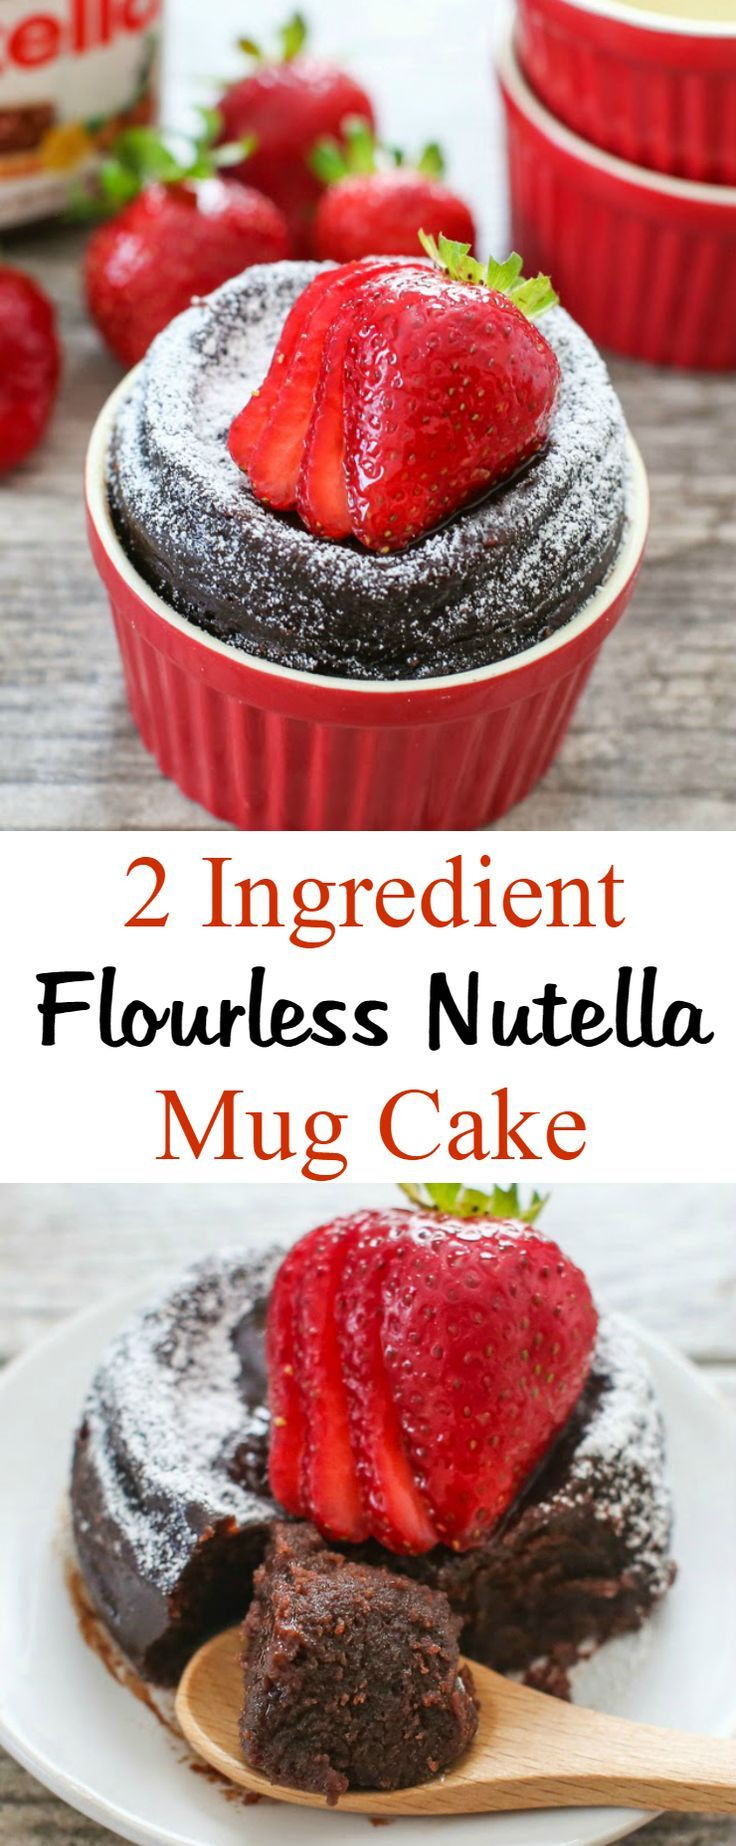 Nutella Mug Cake No Egg
 2 Ingre nt Flourless Nutella Mug Cake Recipe